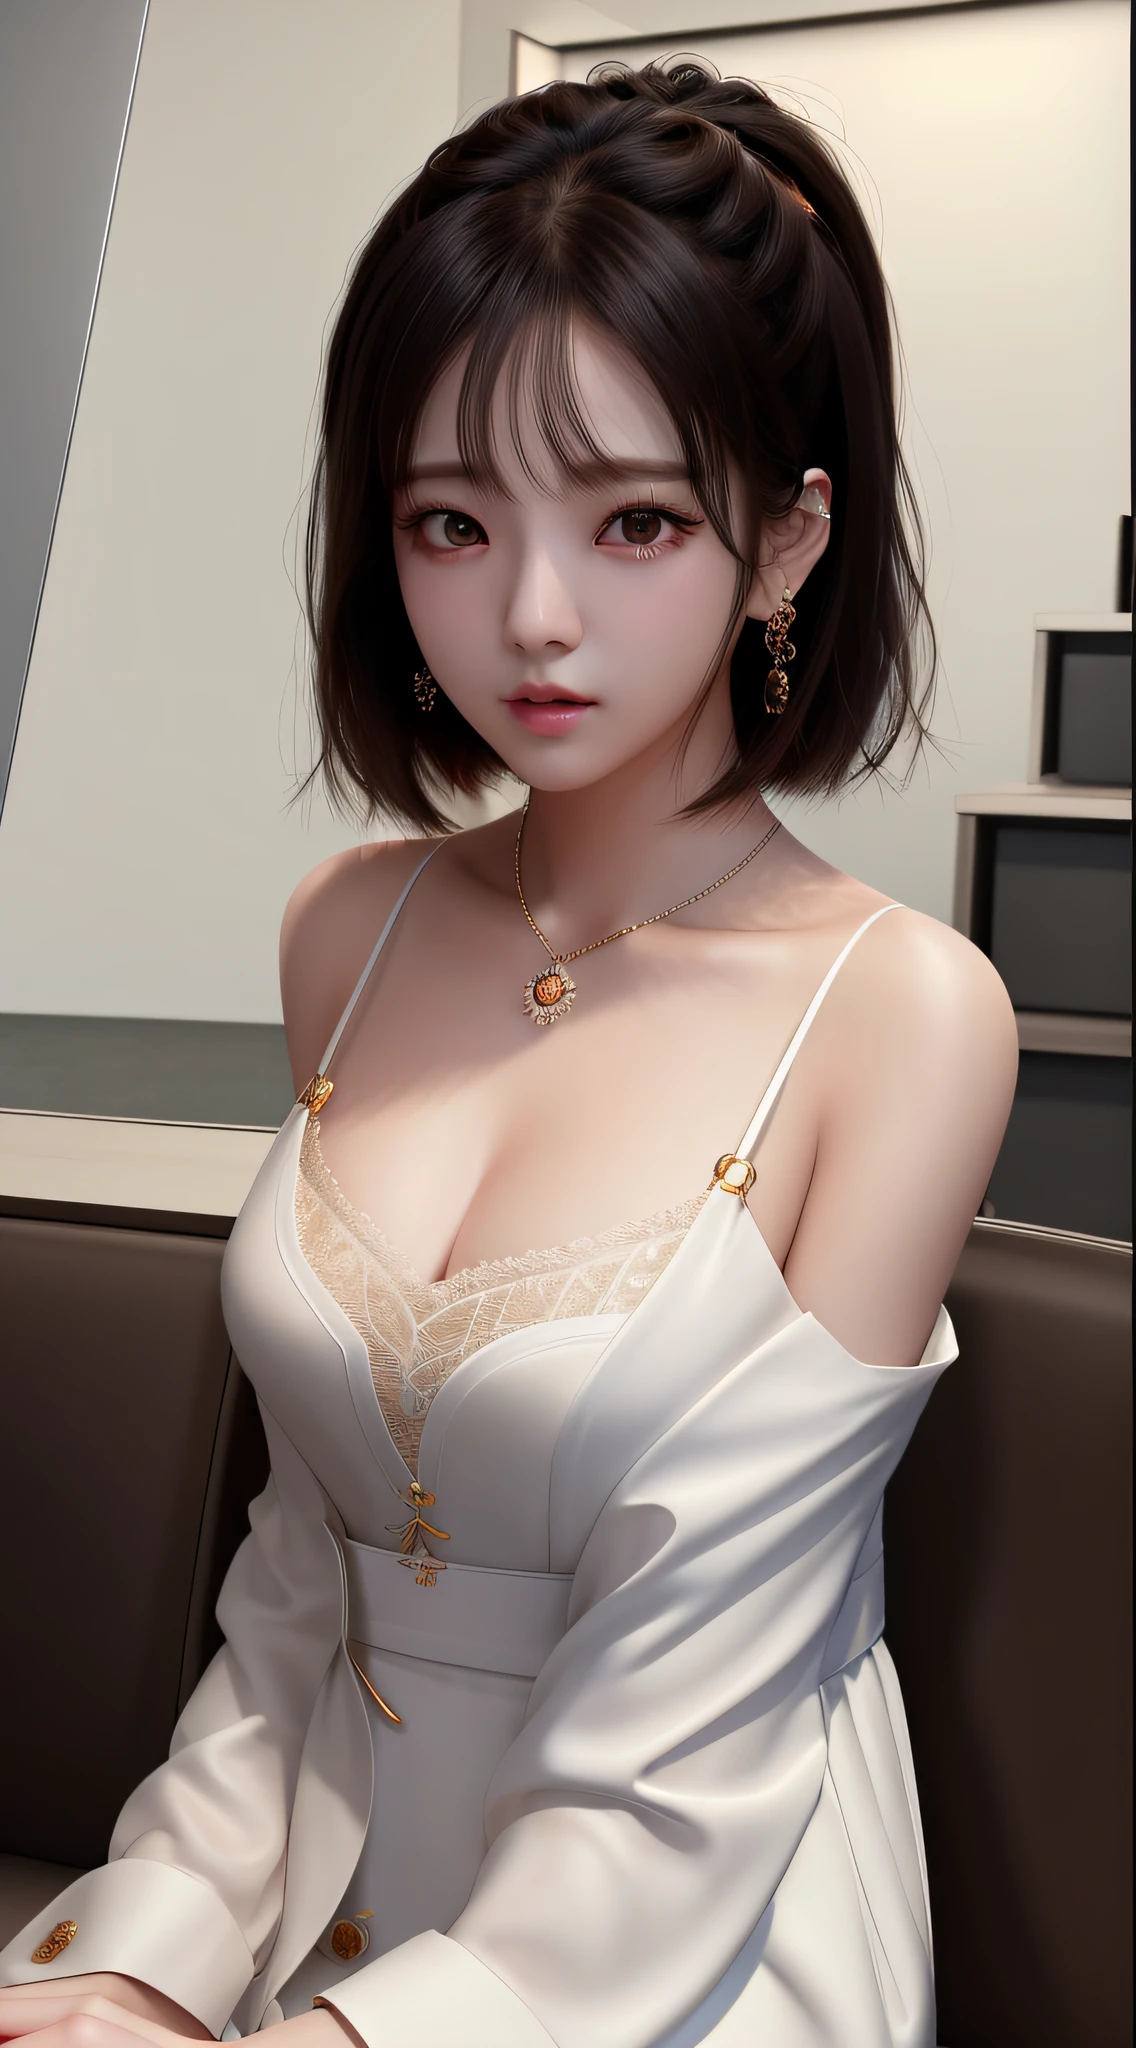 (매우 상세한 CG Unity 8k 벽지), 세상에서 가장 아름다운 예술 작품, 여자 1명, 상체,케이팝 아이돌, 지수, ((SFW))